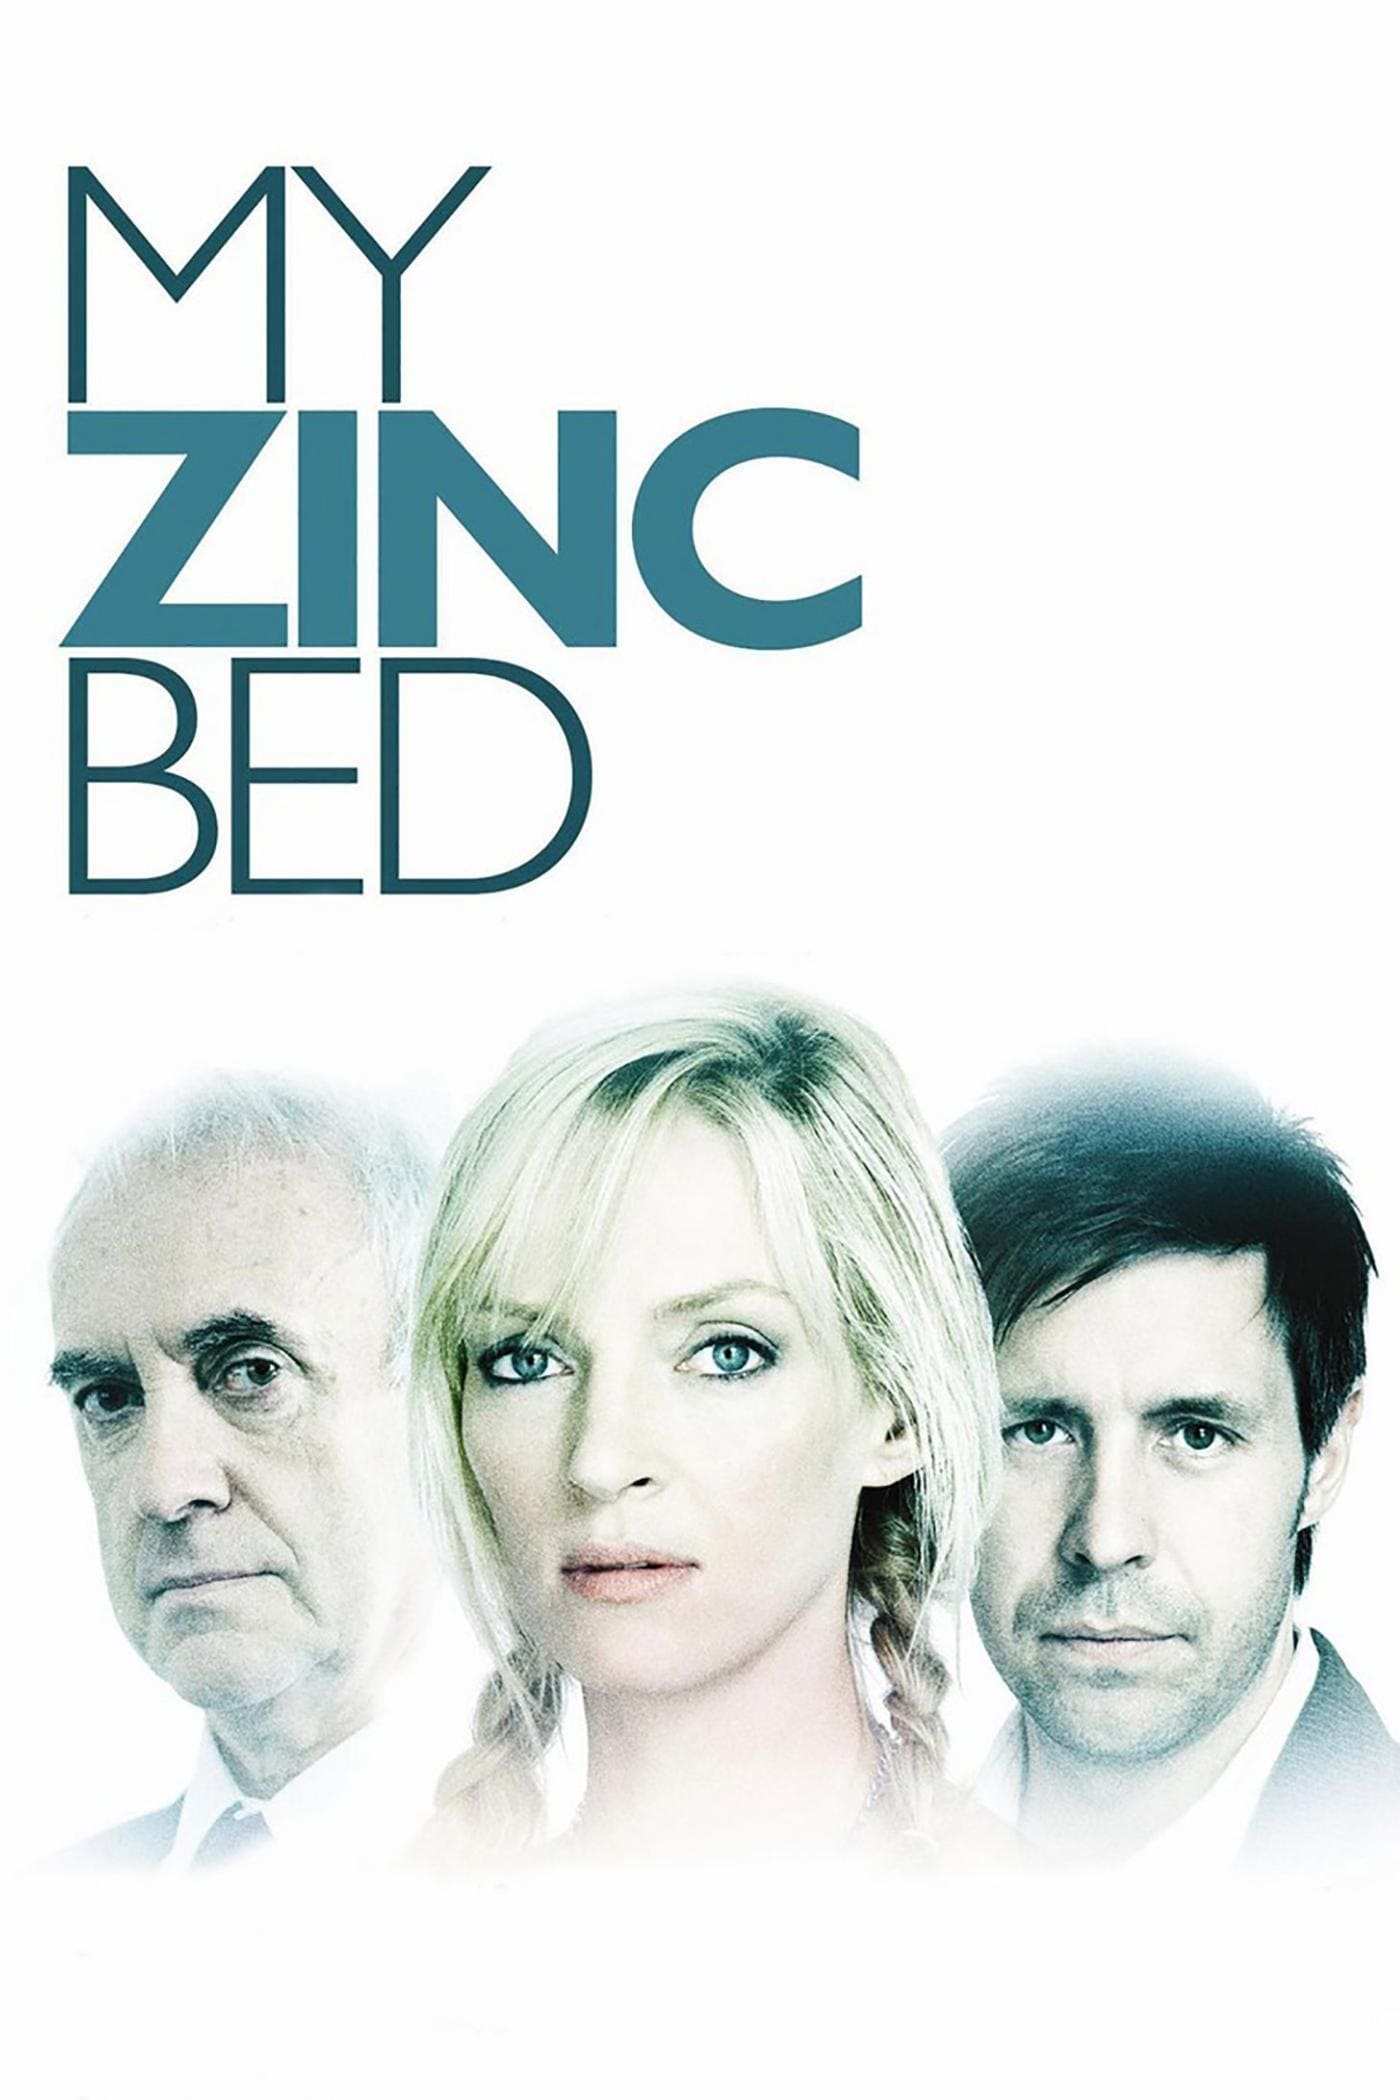 Plakat von "My Zinc Bed"